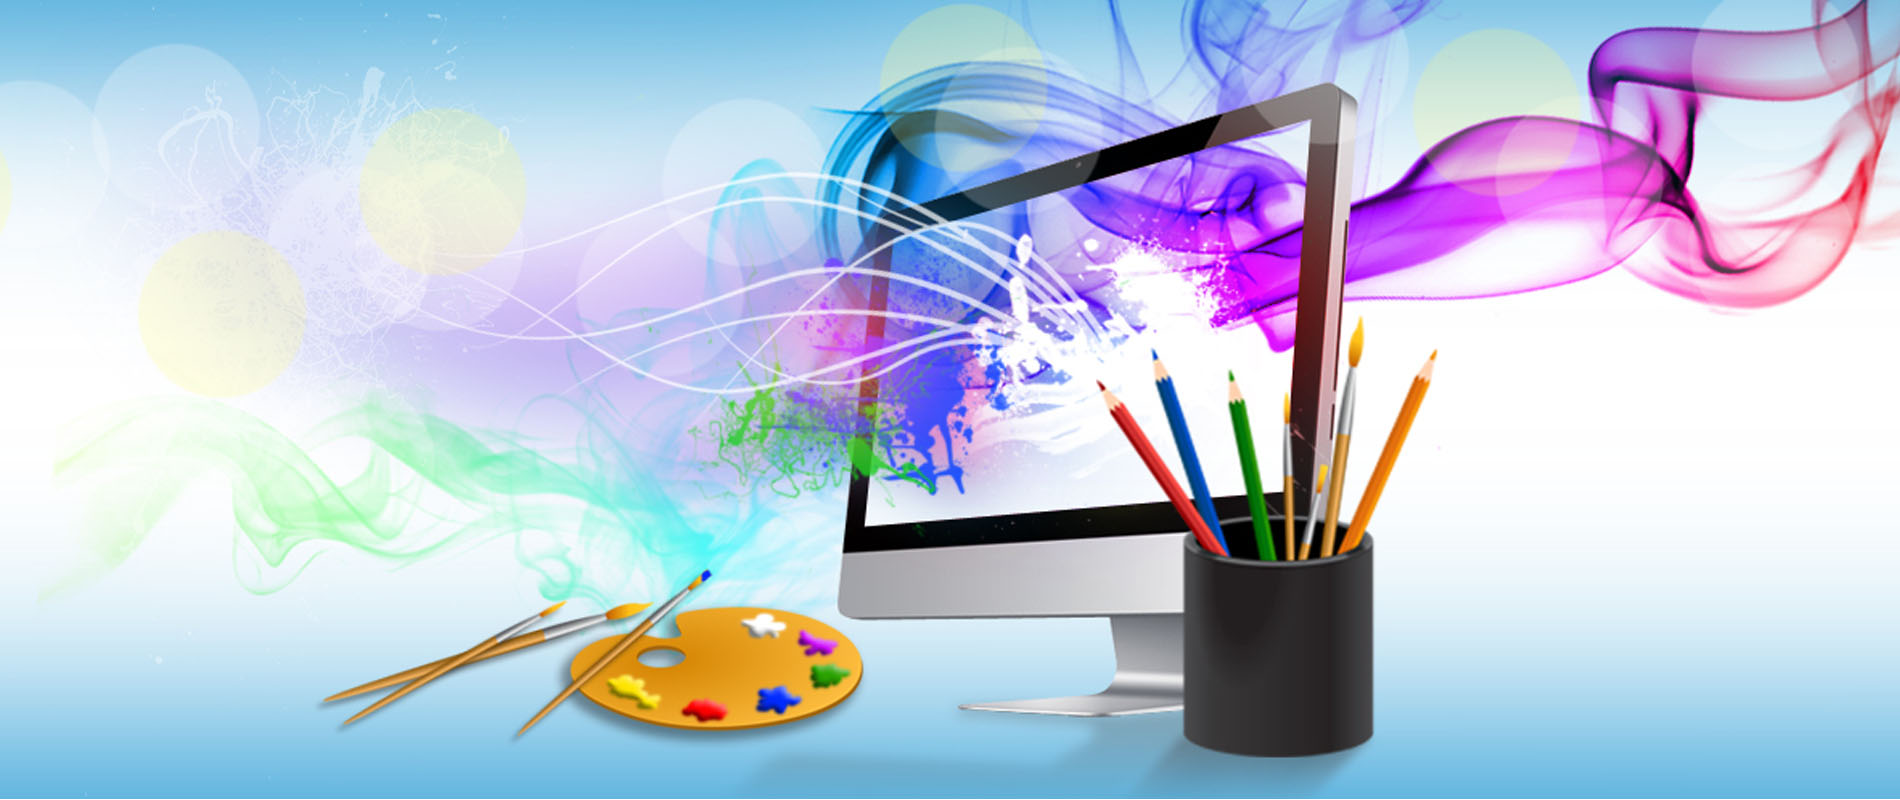 website design services india